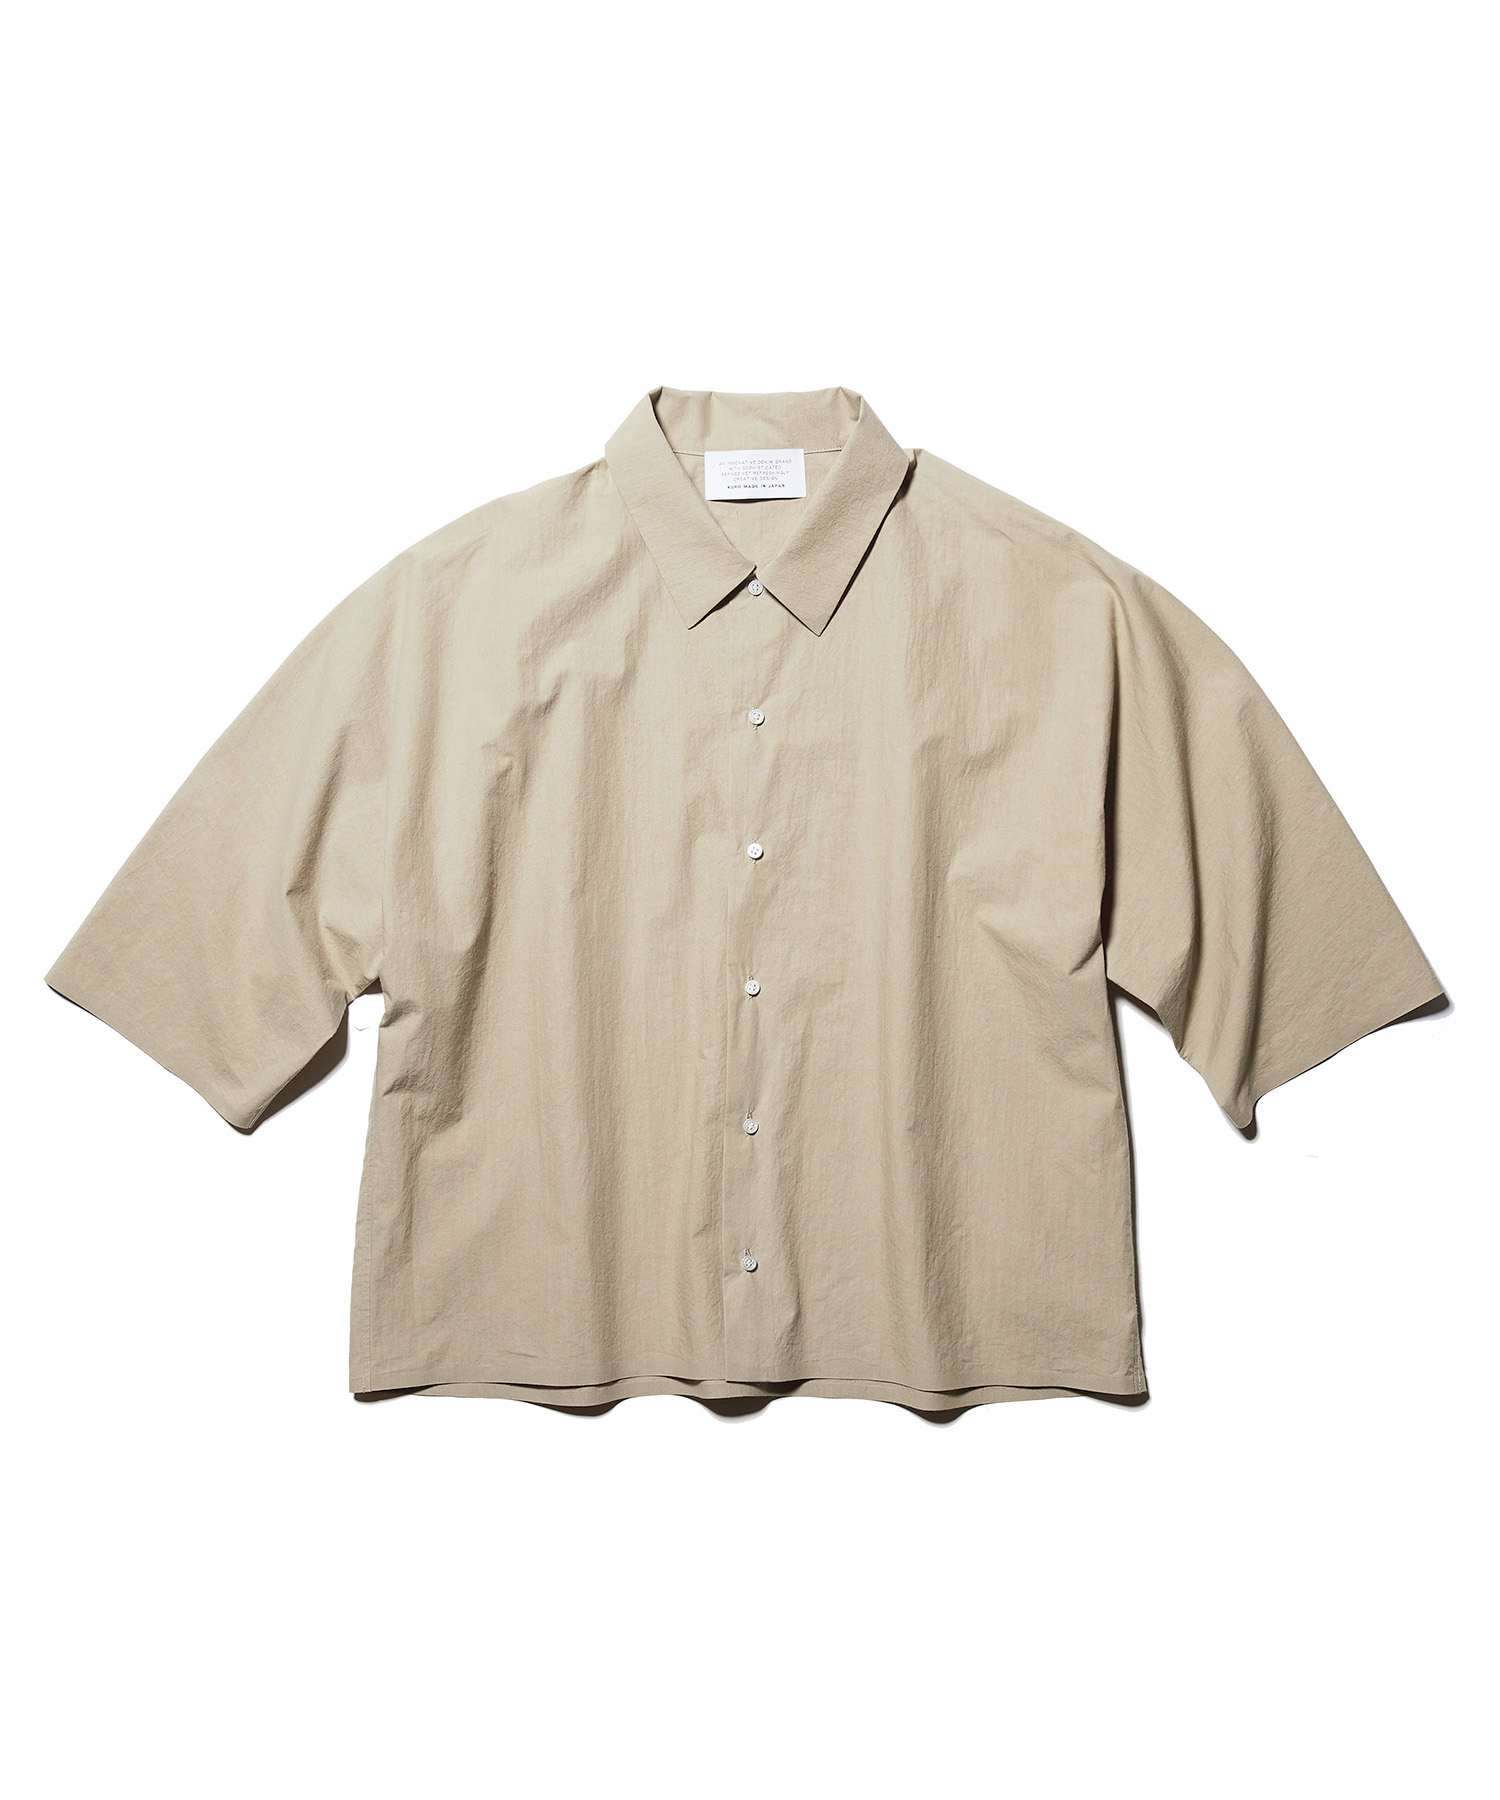 い出のひと時に、とびきりのおしゃれを！ 再入荷 予約販売 KURO クロ 5分袖ビッグシャツ DOLMAN SHIRT S SLEEVE